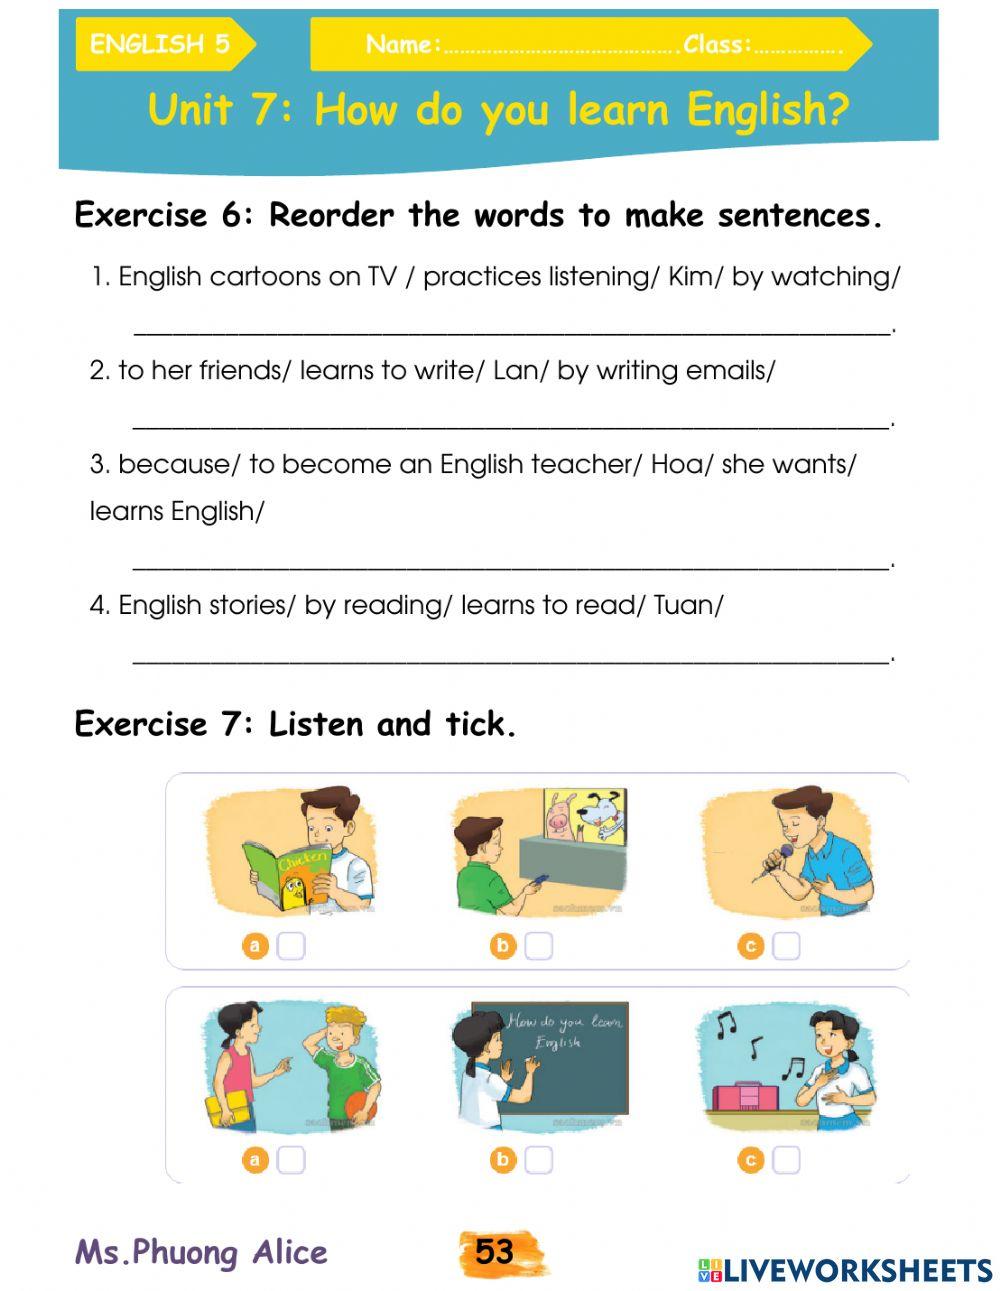 E5-U7-How do you learn English?